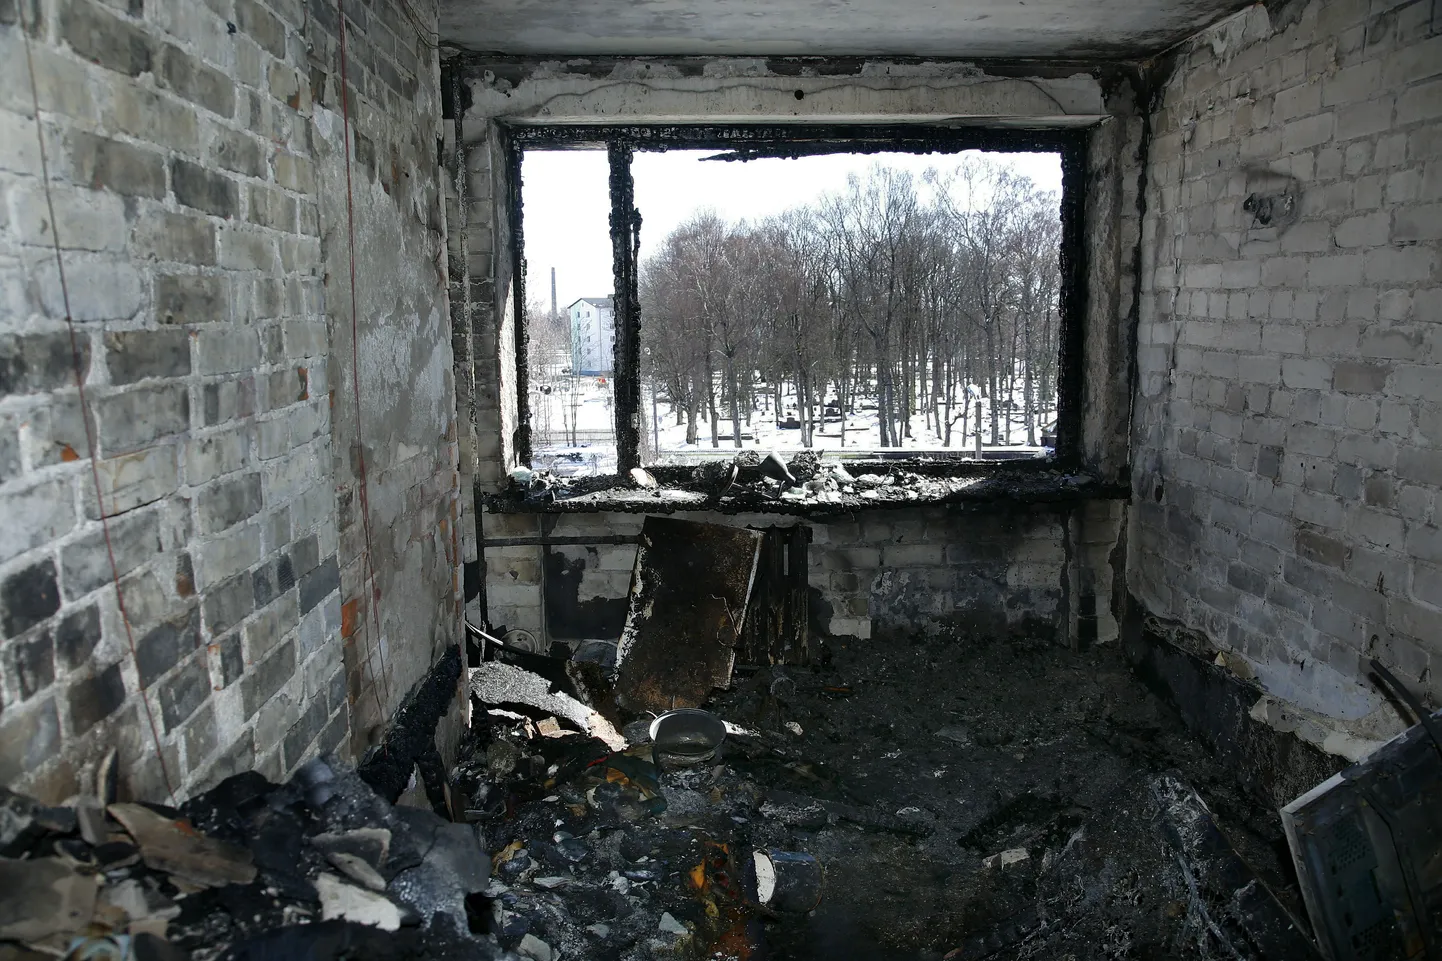 Aprilli alguses hukkus Pärnu linnale kuuluvas Liiva 8d sotsiaalmajas  põlengus vanem naine.